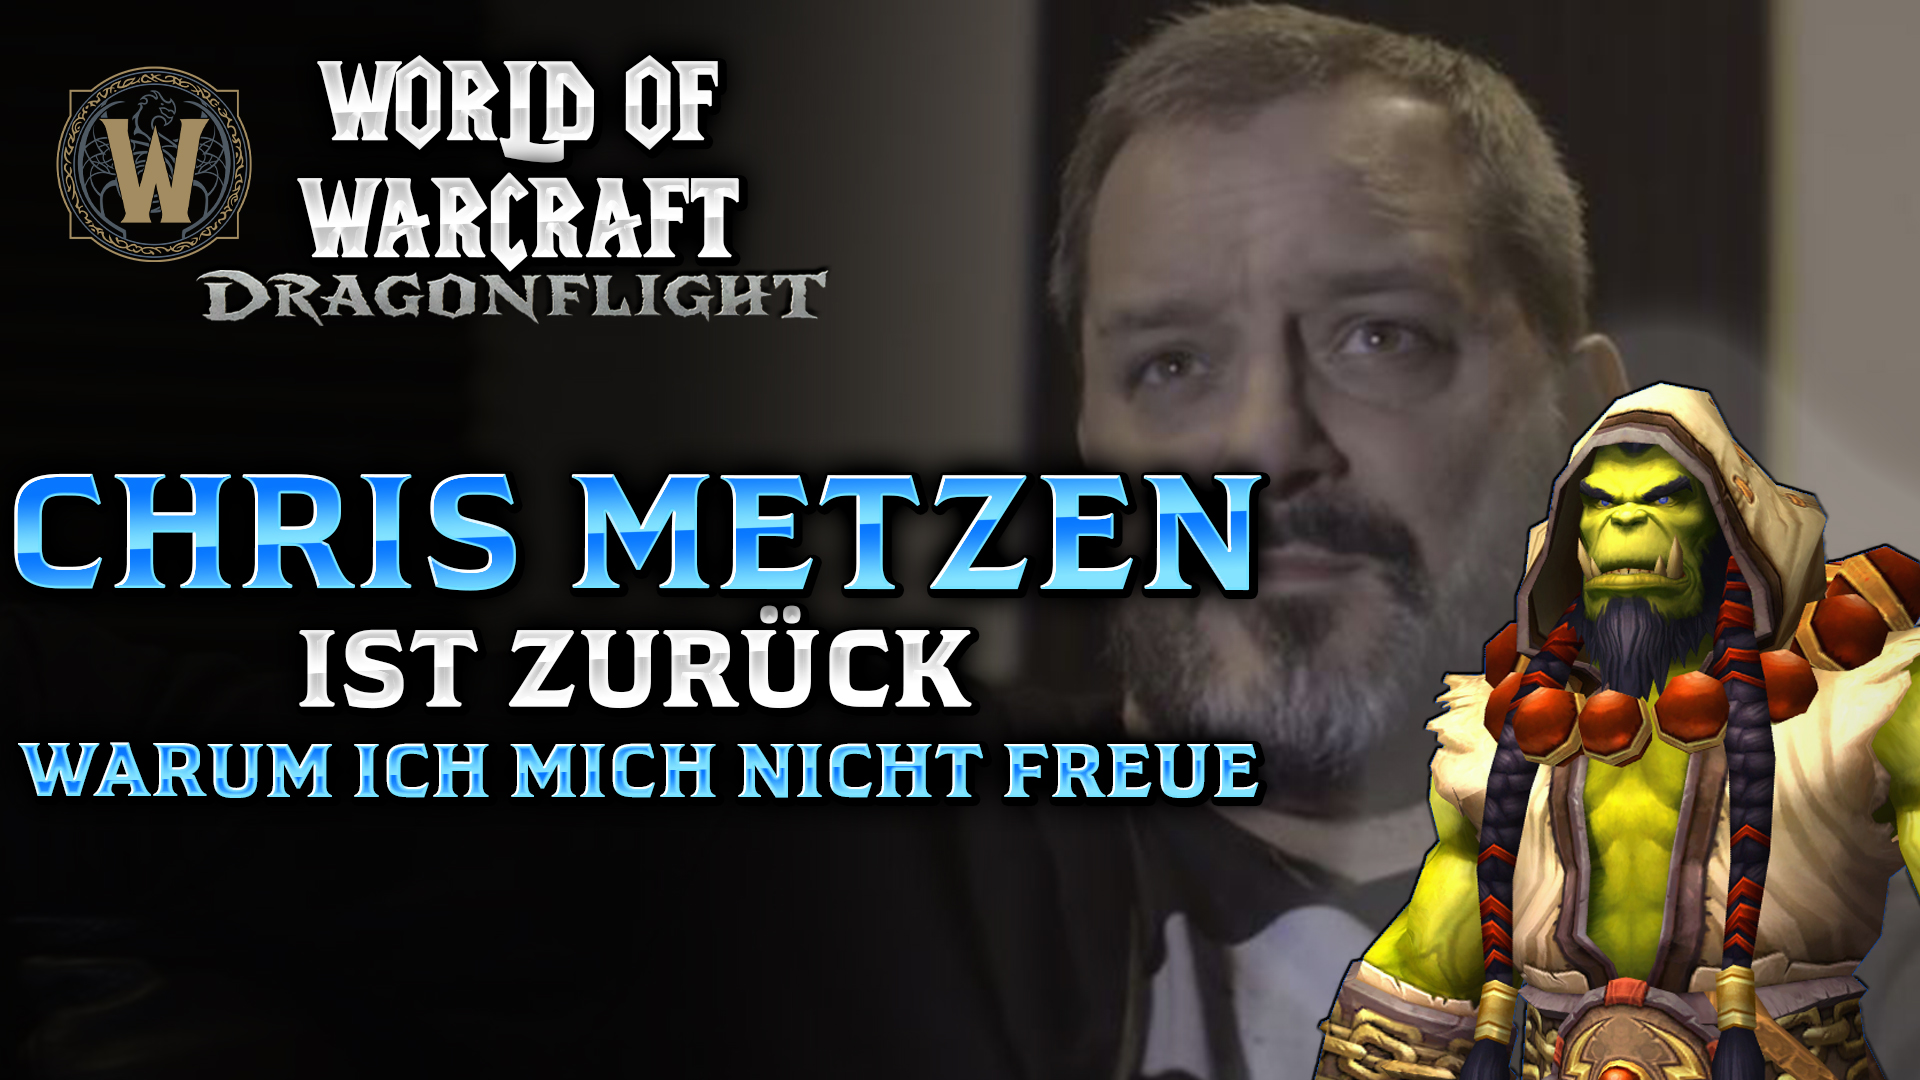 Chris Metzen arbeitet wieder für World of Warcraft – Meine Meinung